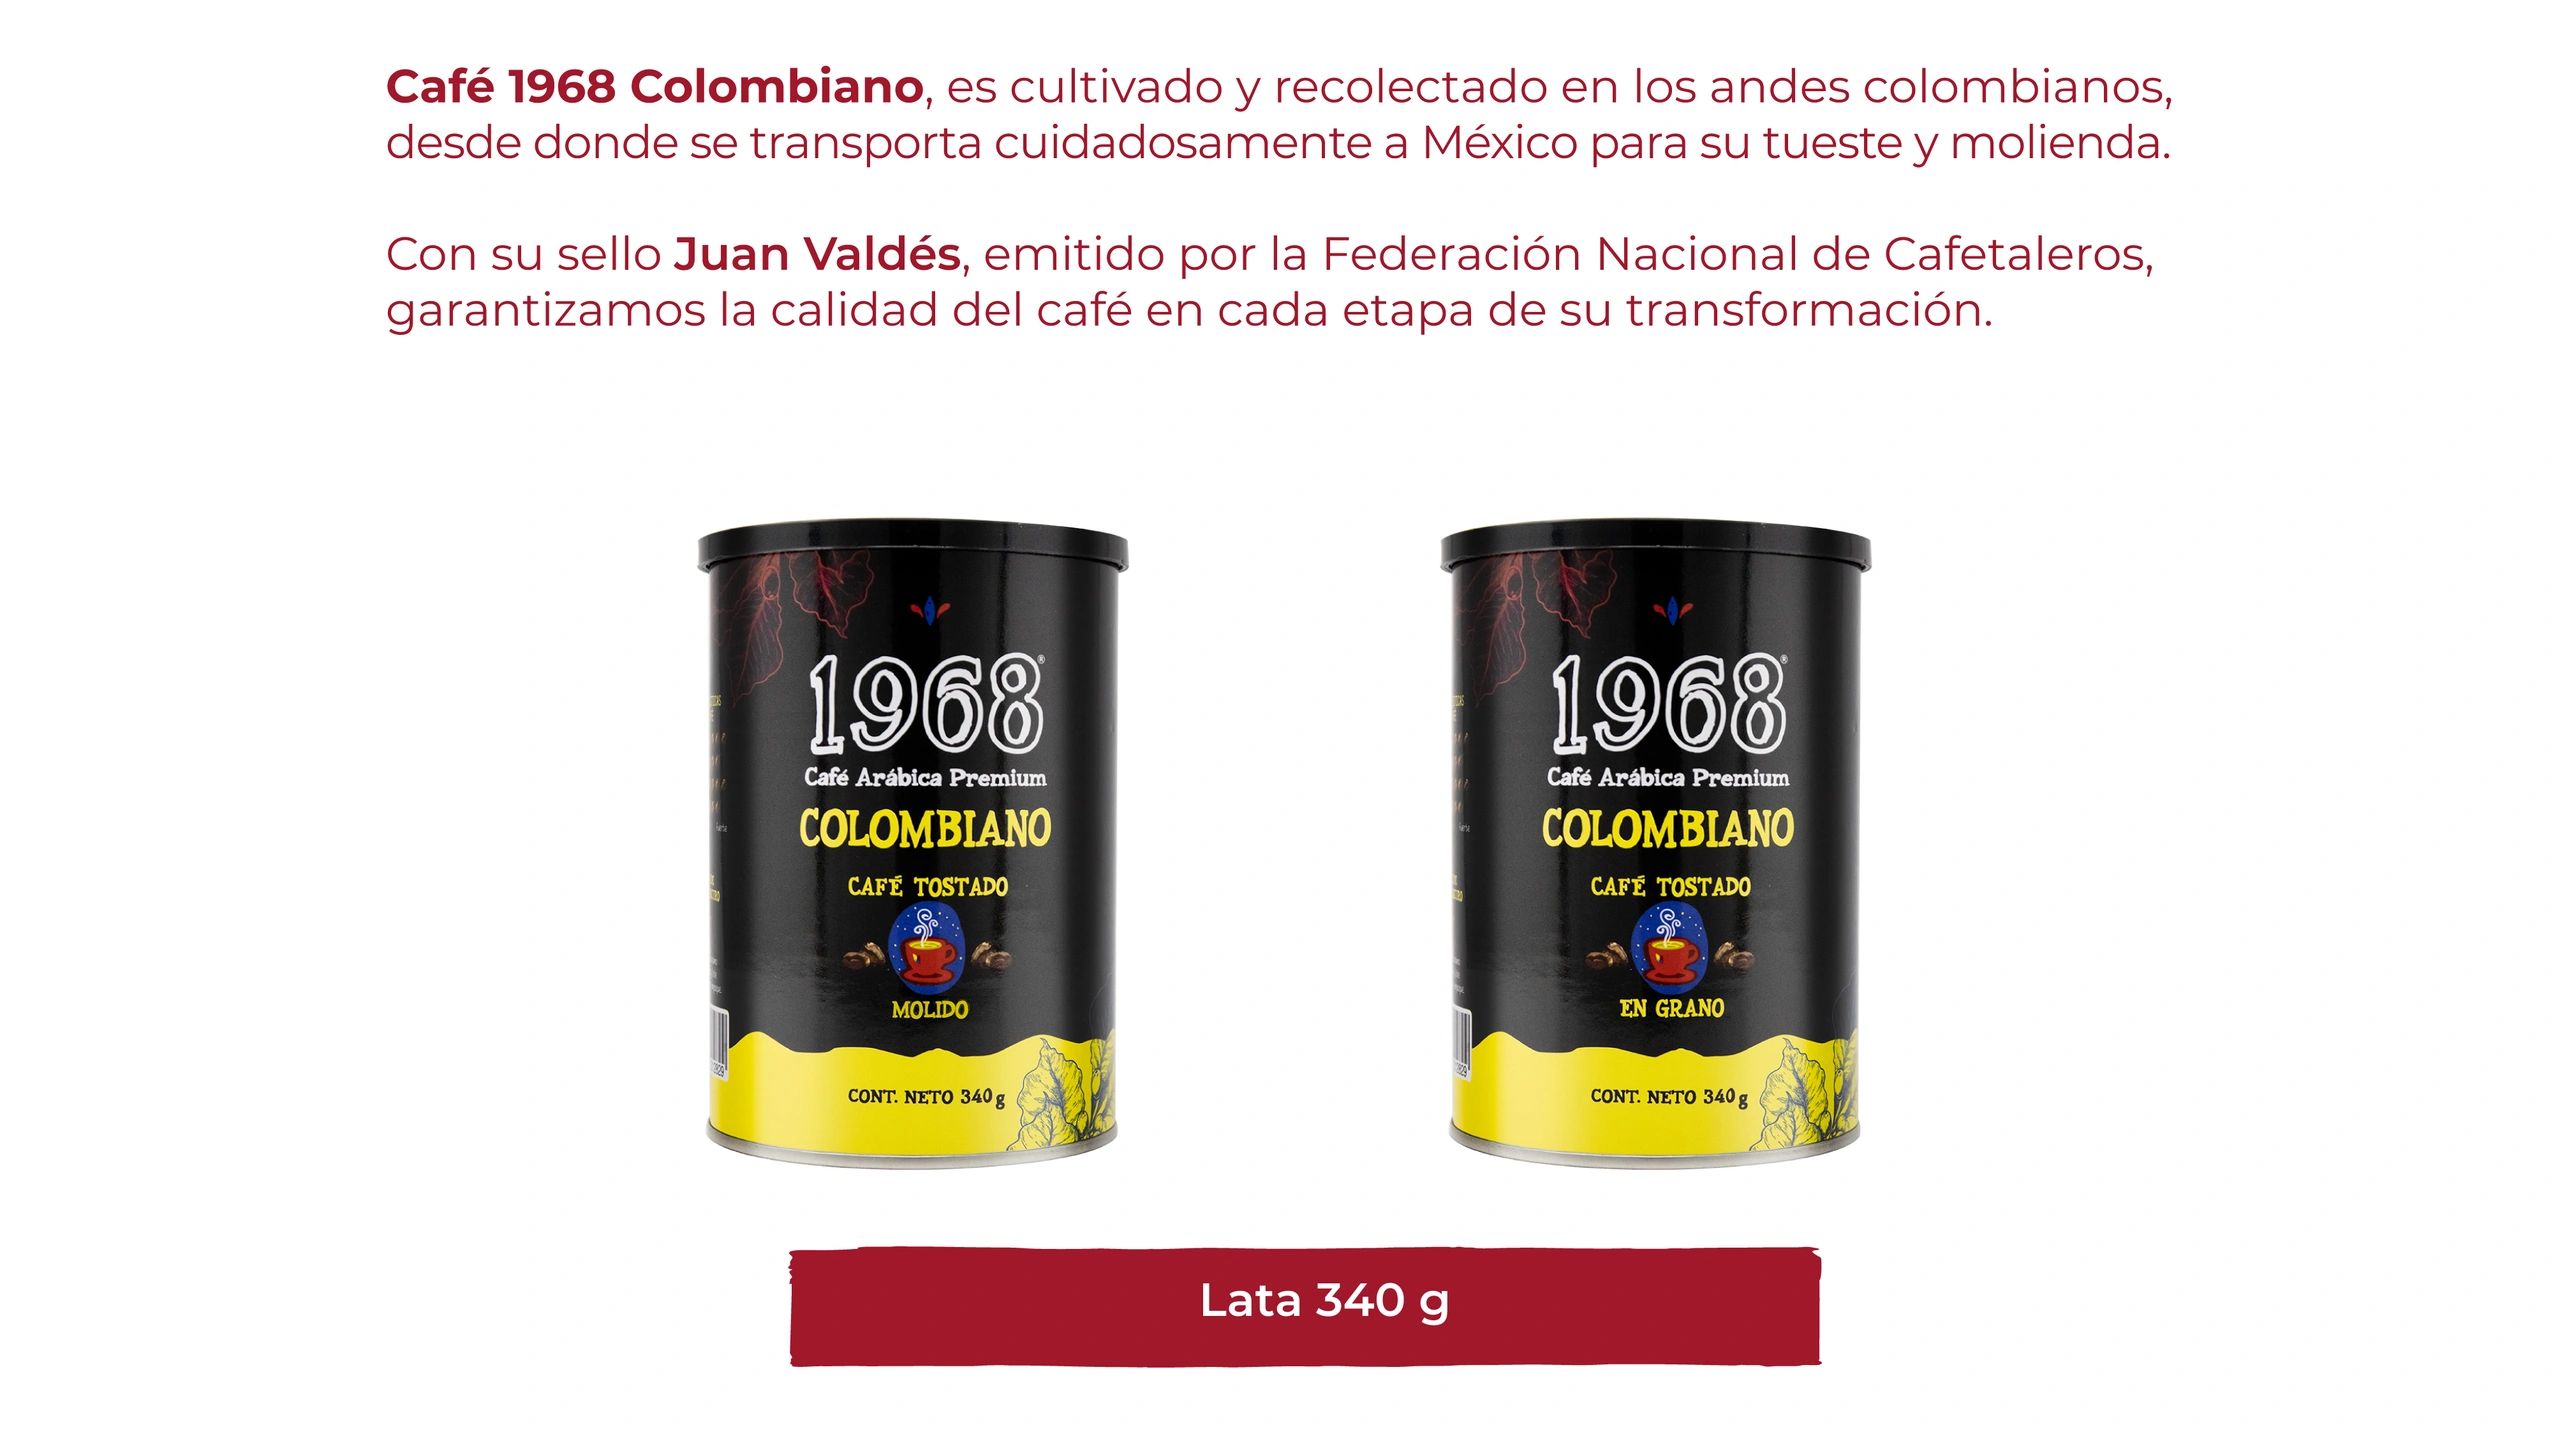 Café con certificacion juan valdez, café de origen colombiano, con cuerpo fuerte y acidez citrica